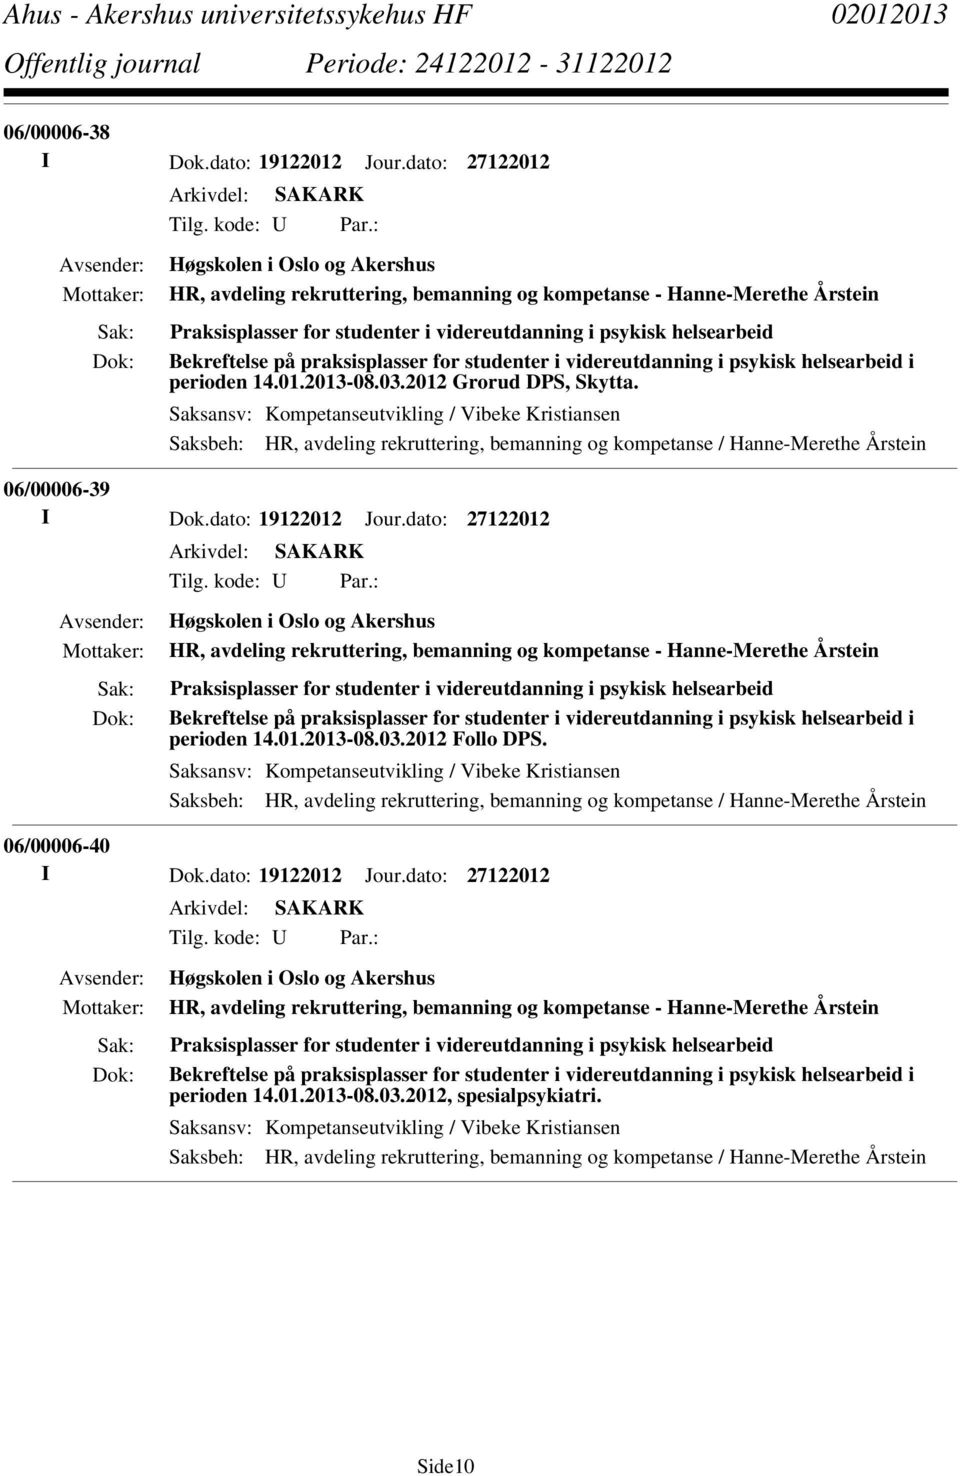 praksisplasser for studenter i videreutdanning i psykisk helsearbeid i perioden 14.01.2013-08.03.2012 Grorud DPS, Skytta.